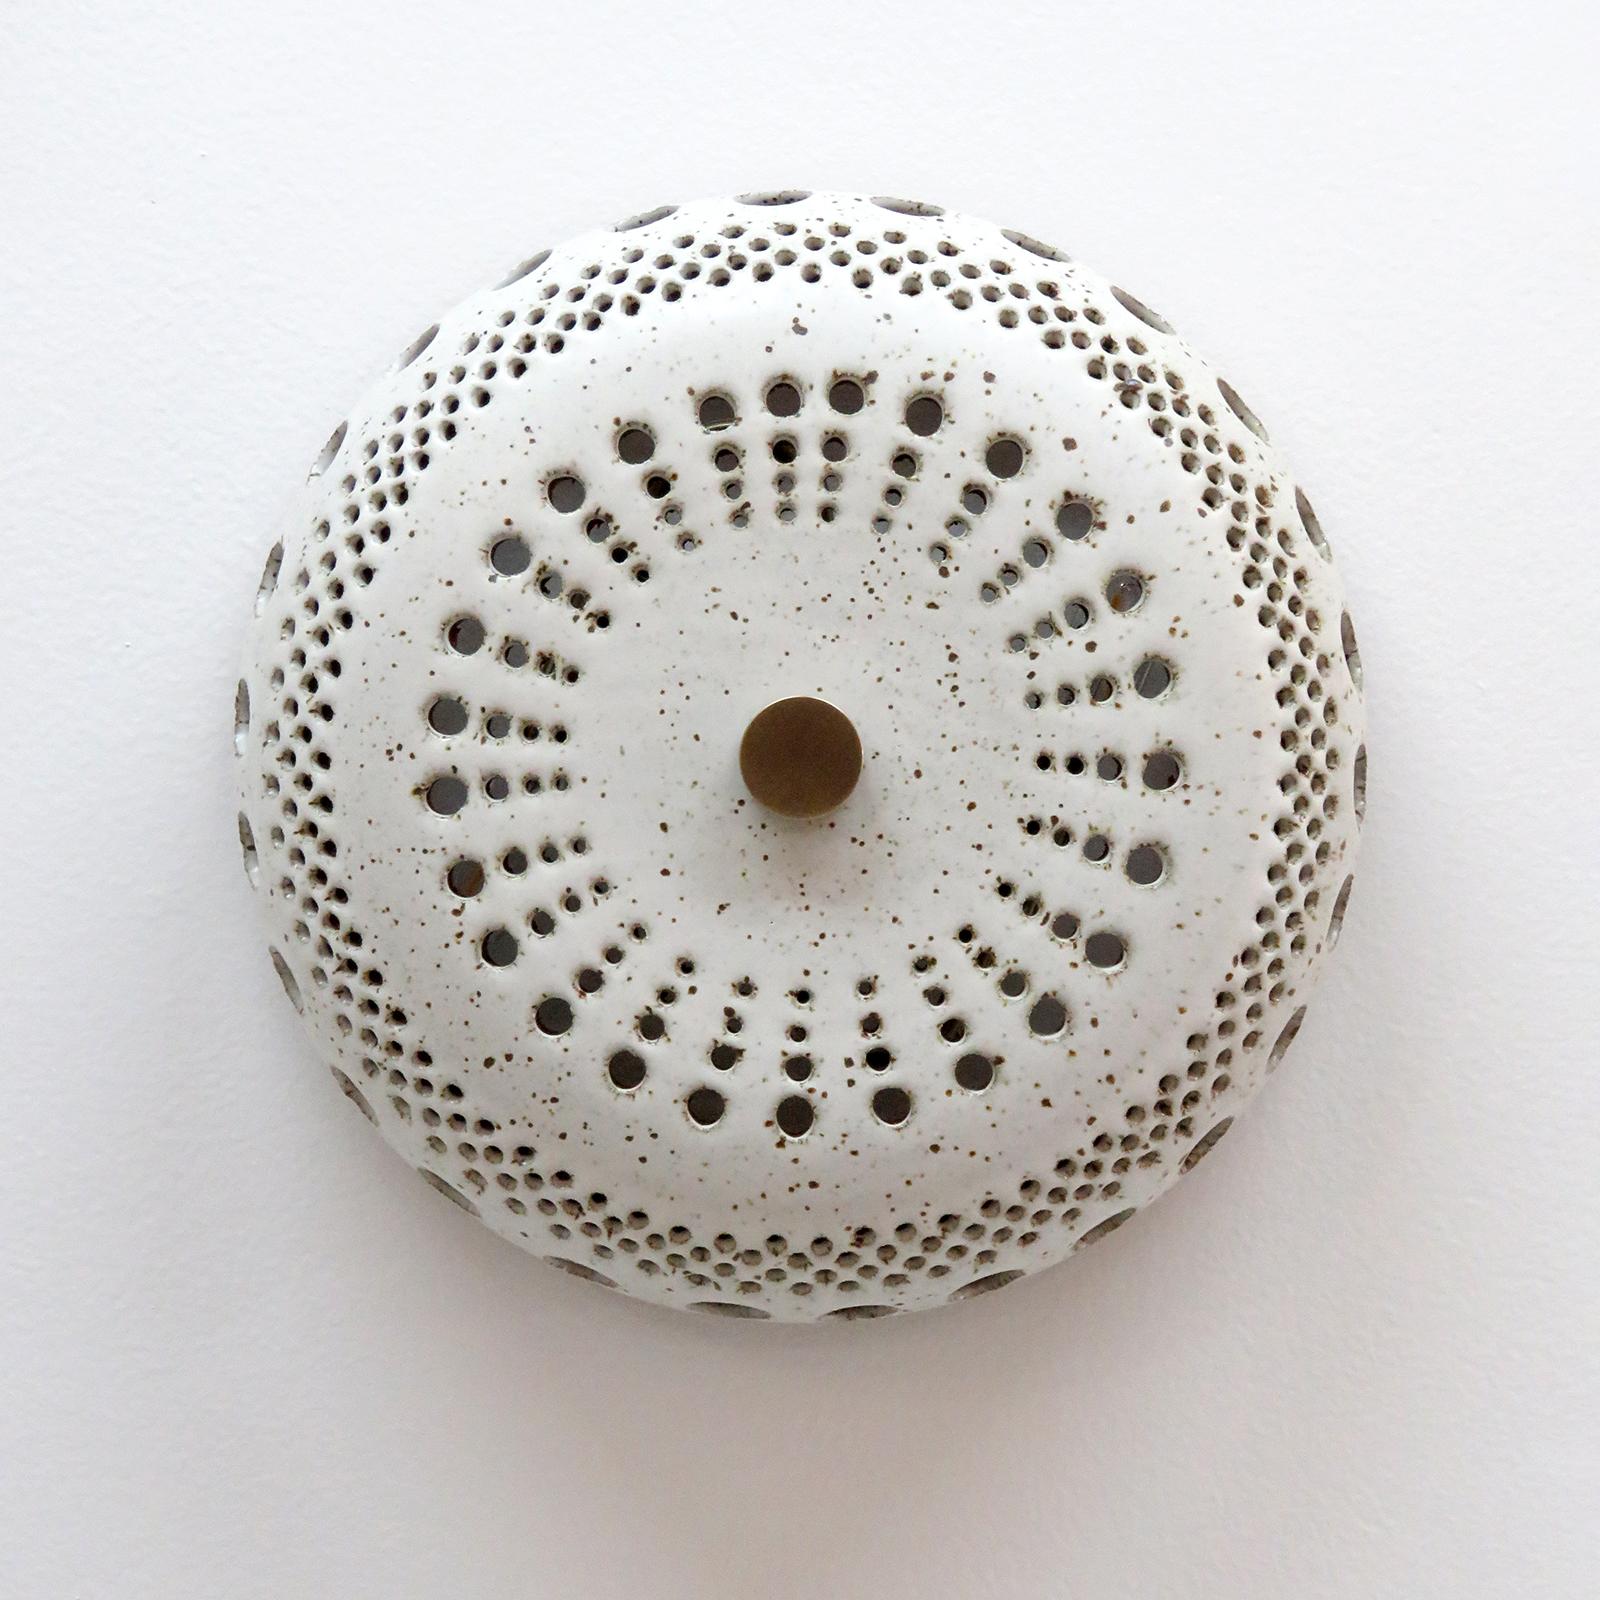 Die atemberaubende Keramikleuchte No.12 wurde von der in Los Angeles lebenden Keramikerin Heather Levine entworfen und handgefertigt. Hochgebranntes Steinzeug mit mattweißer Glasur auf einem korkfarbenen Tonkörper mit dekorativen Perforationen, die